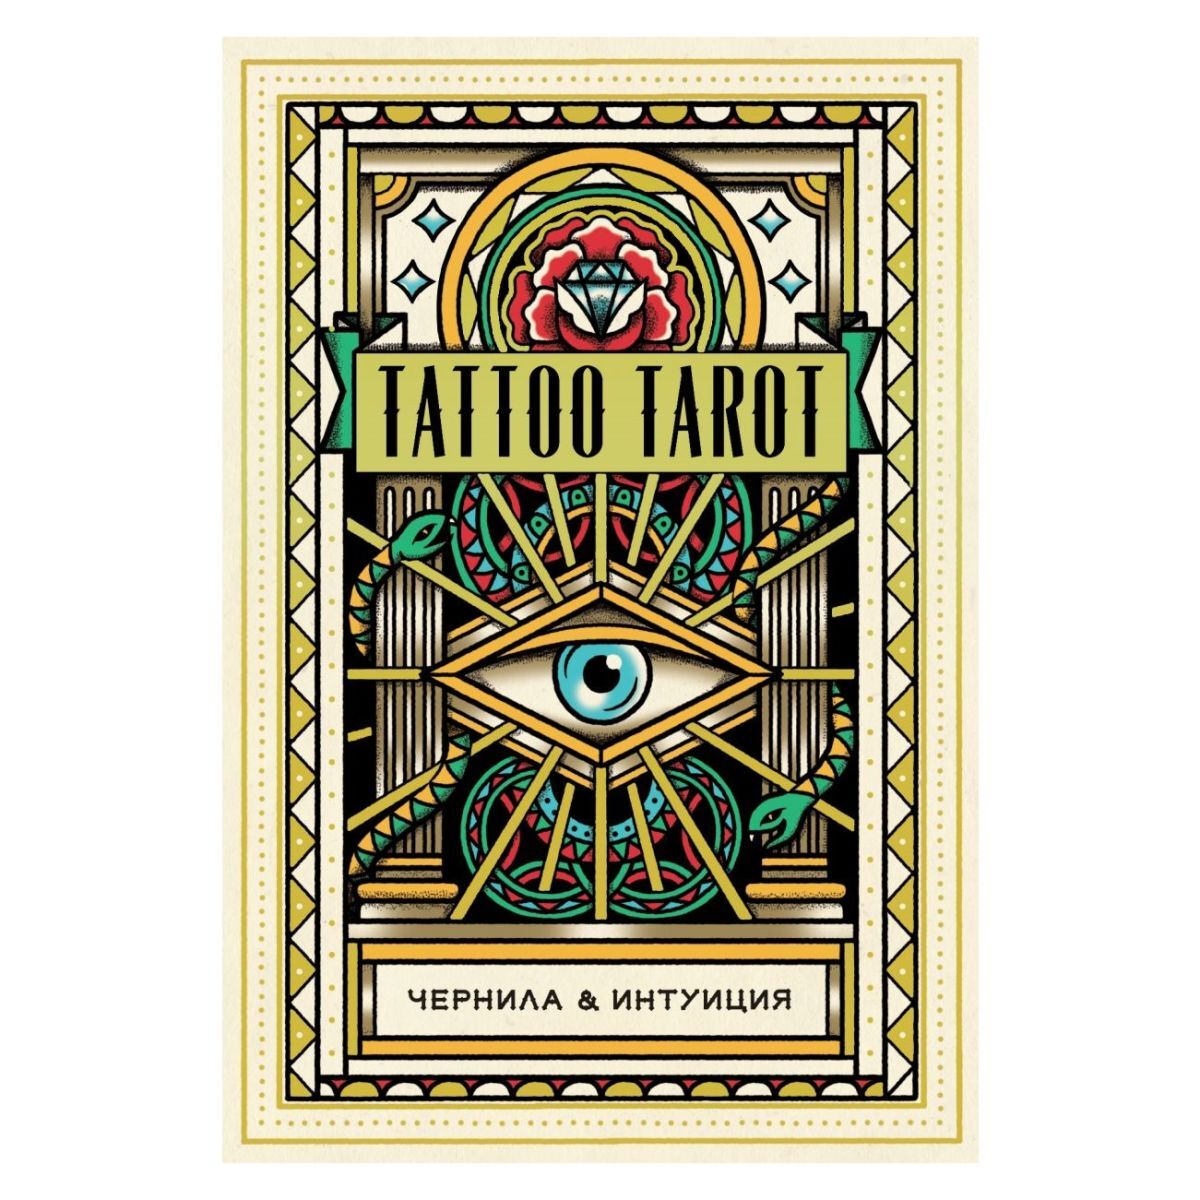 

Подарочный набор "Тату Таро. Чернила и интуиция" (Tattoo Tarot)